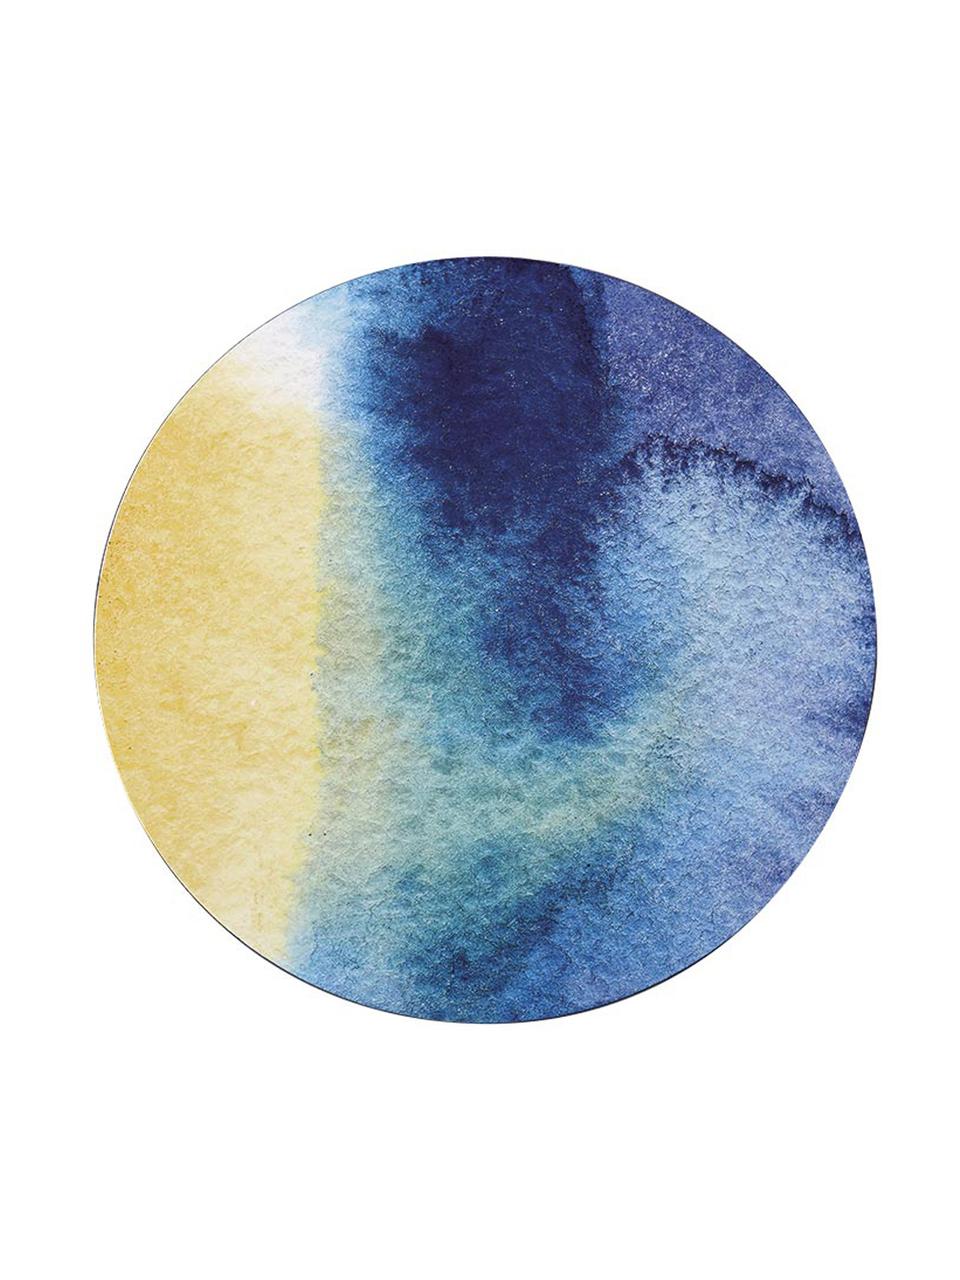 Okrągła podkładka z tworzywa sztucznego Inky, 4 szt., Niebieski, biały, żółty, turkusowy, Ø 29 cm